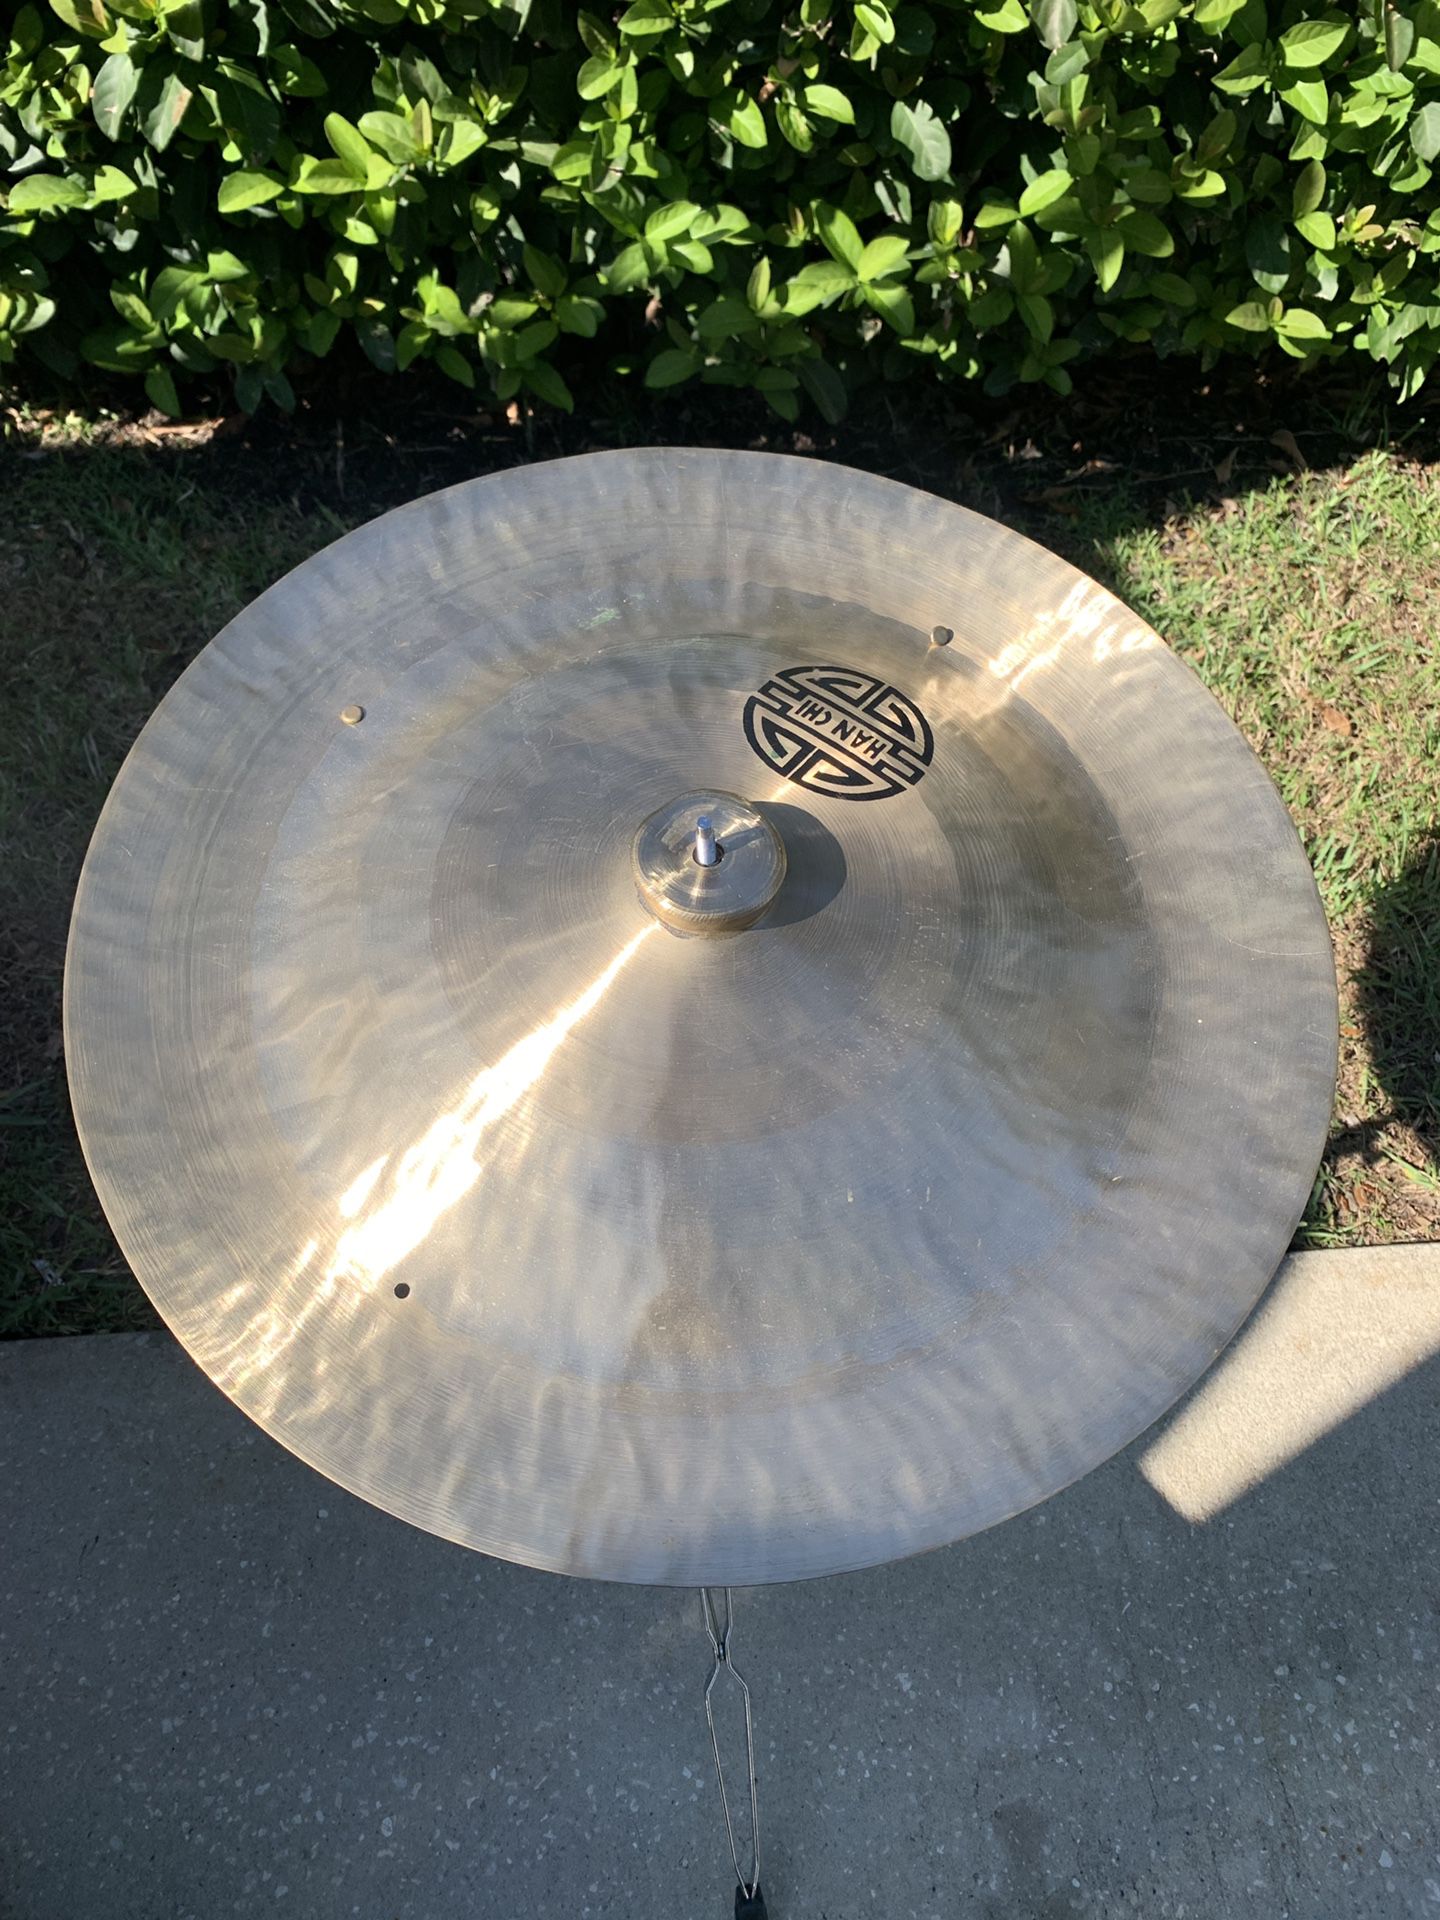 22” Han chi China cymbal with rivets